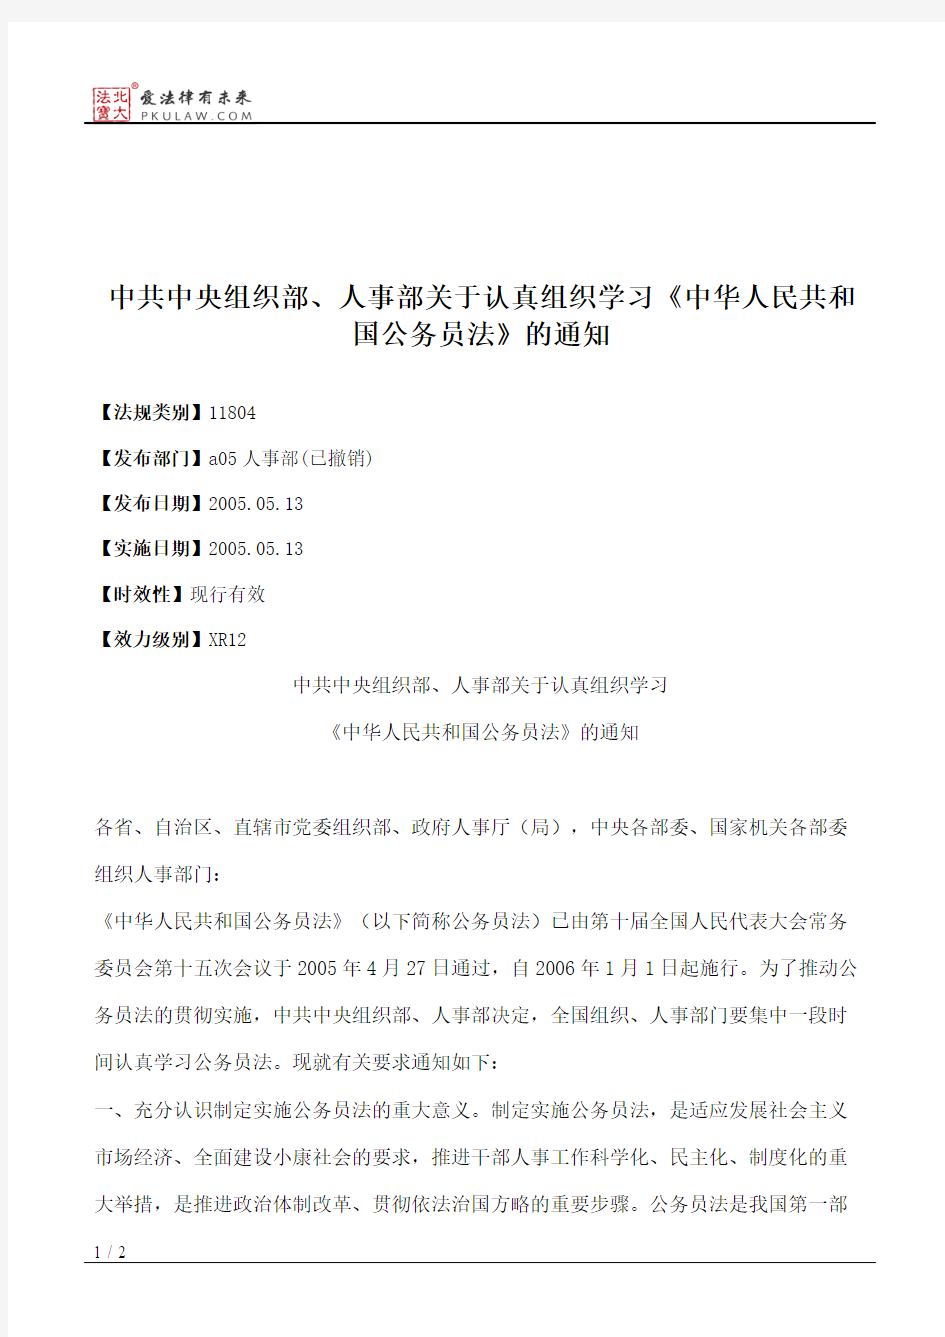 中共中央组织部、人事部关于认真组织学习《中华人民共和国公务员